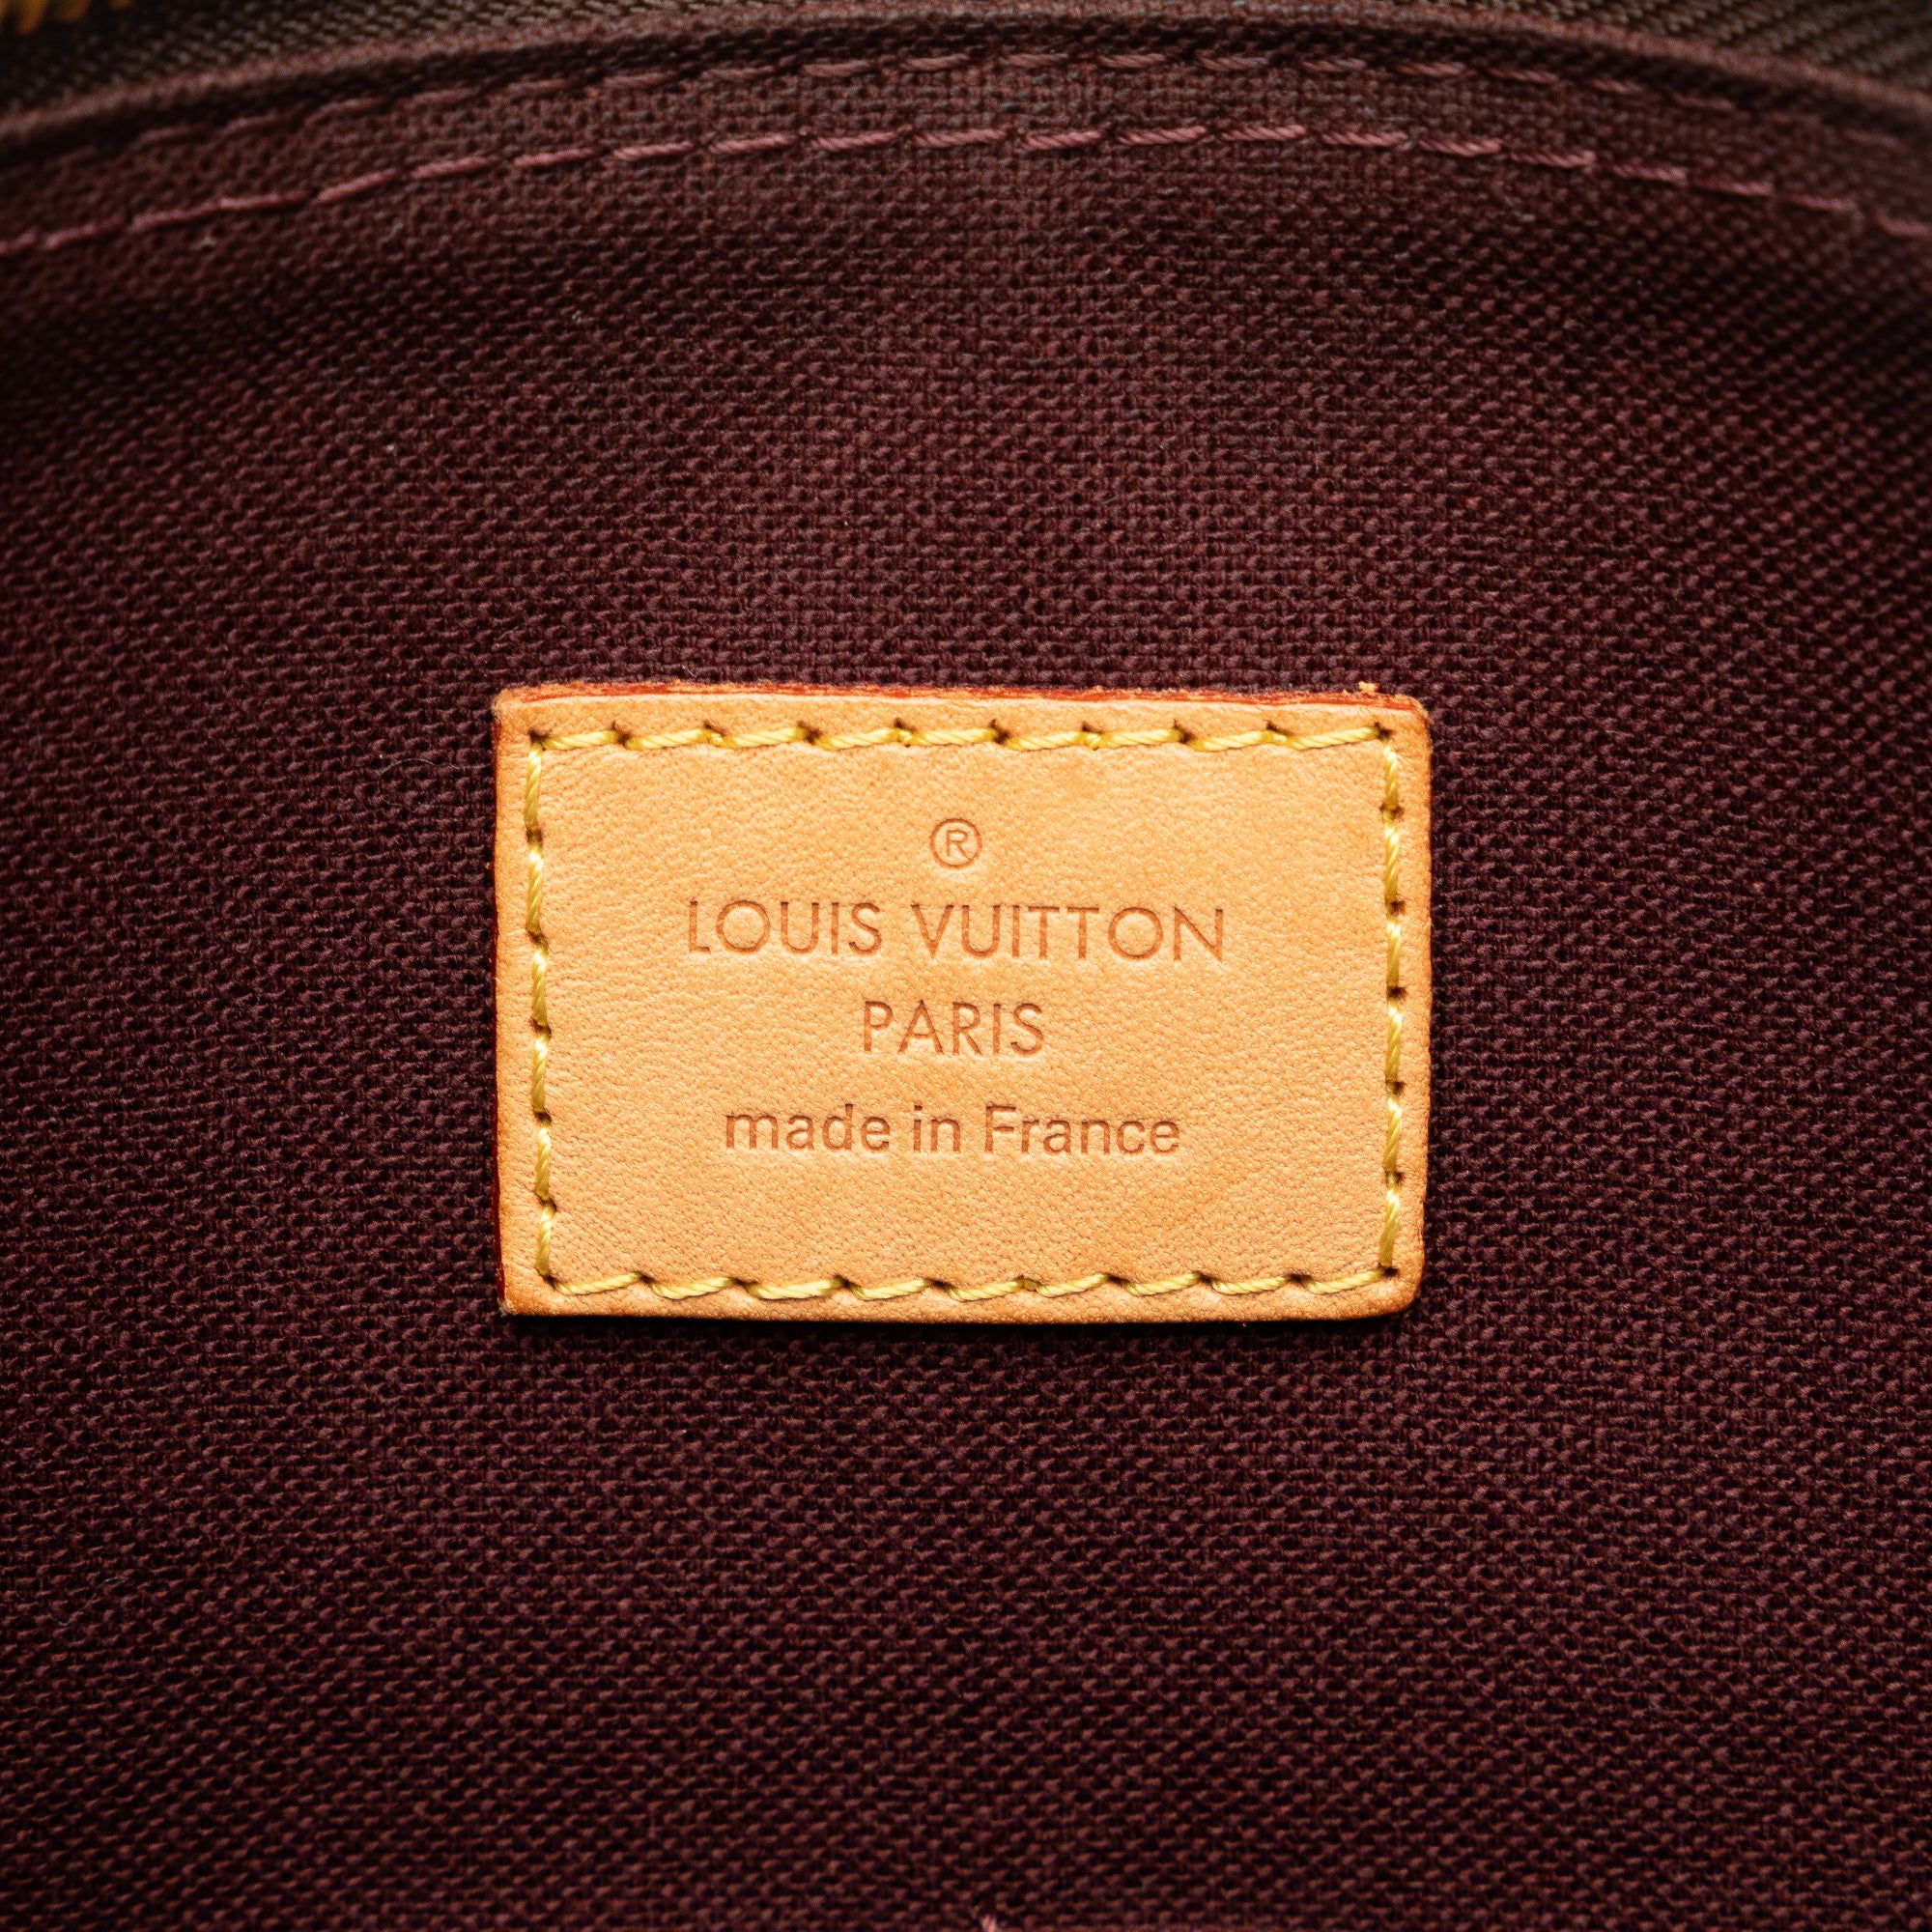 Voir tous les sacs Louis Vuitton en vente - Atelier-lumieresShops Revival